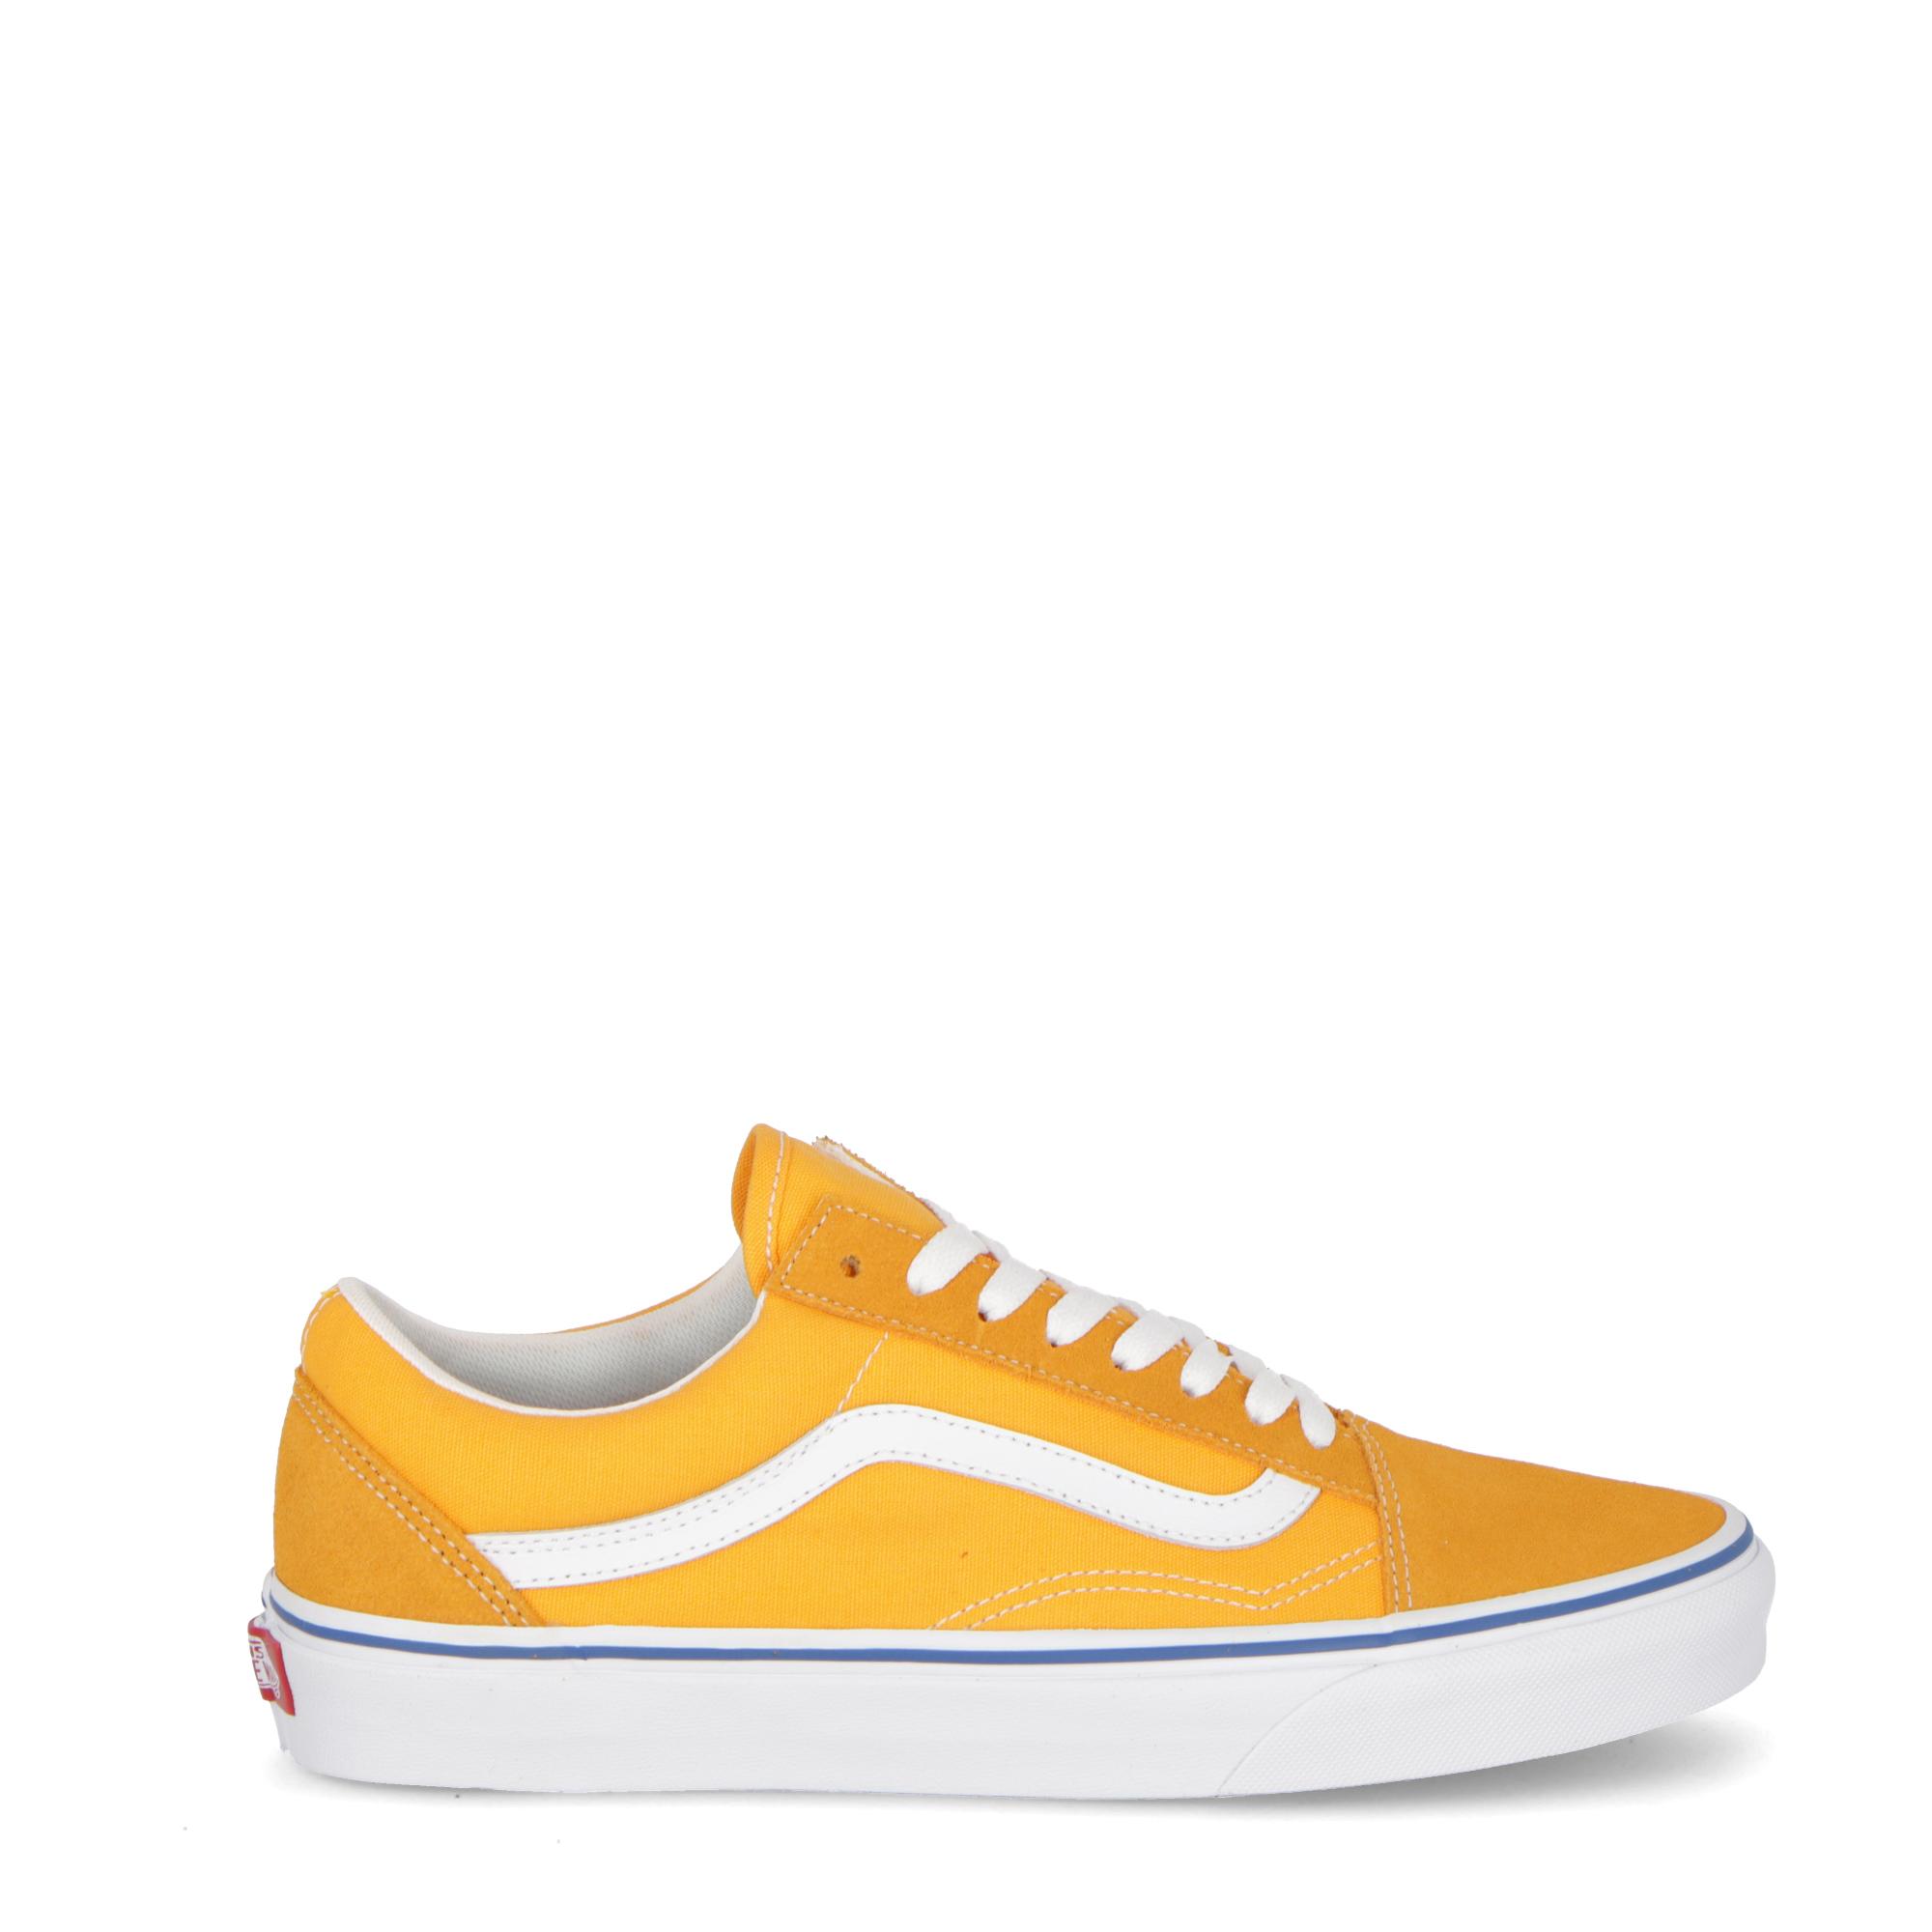 vans old skool yellow & true white skate shoes